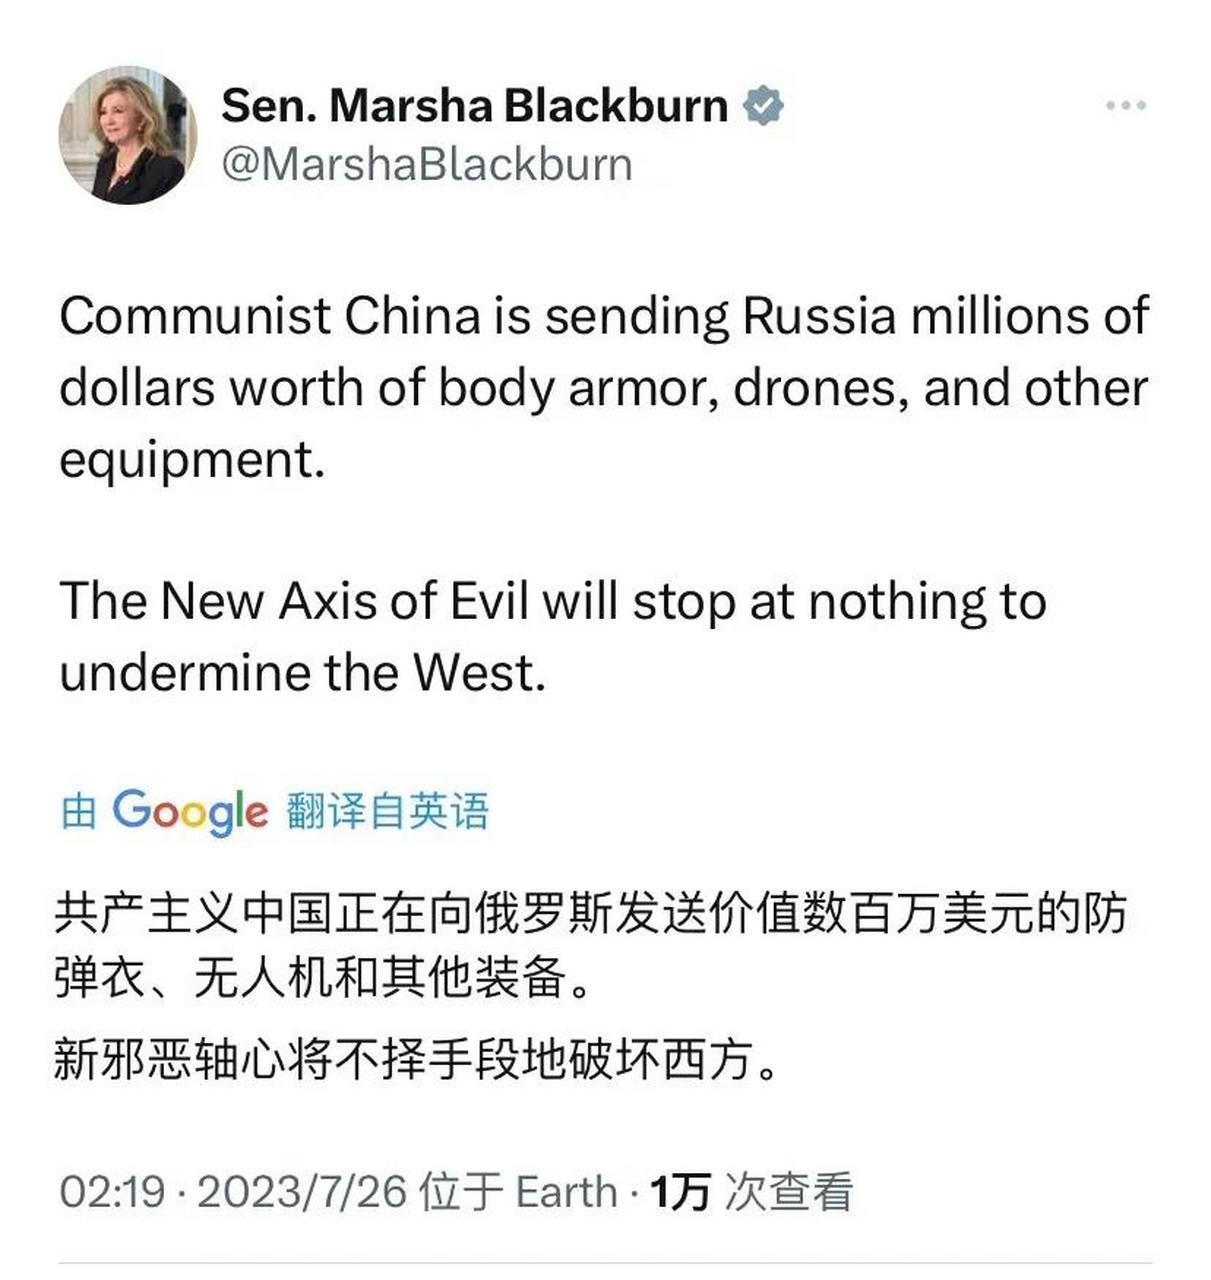 近日,美国共和党籍参议员玛莎·布莱克本污蔑道:共产主义中国正在向